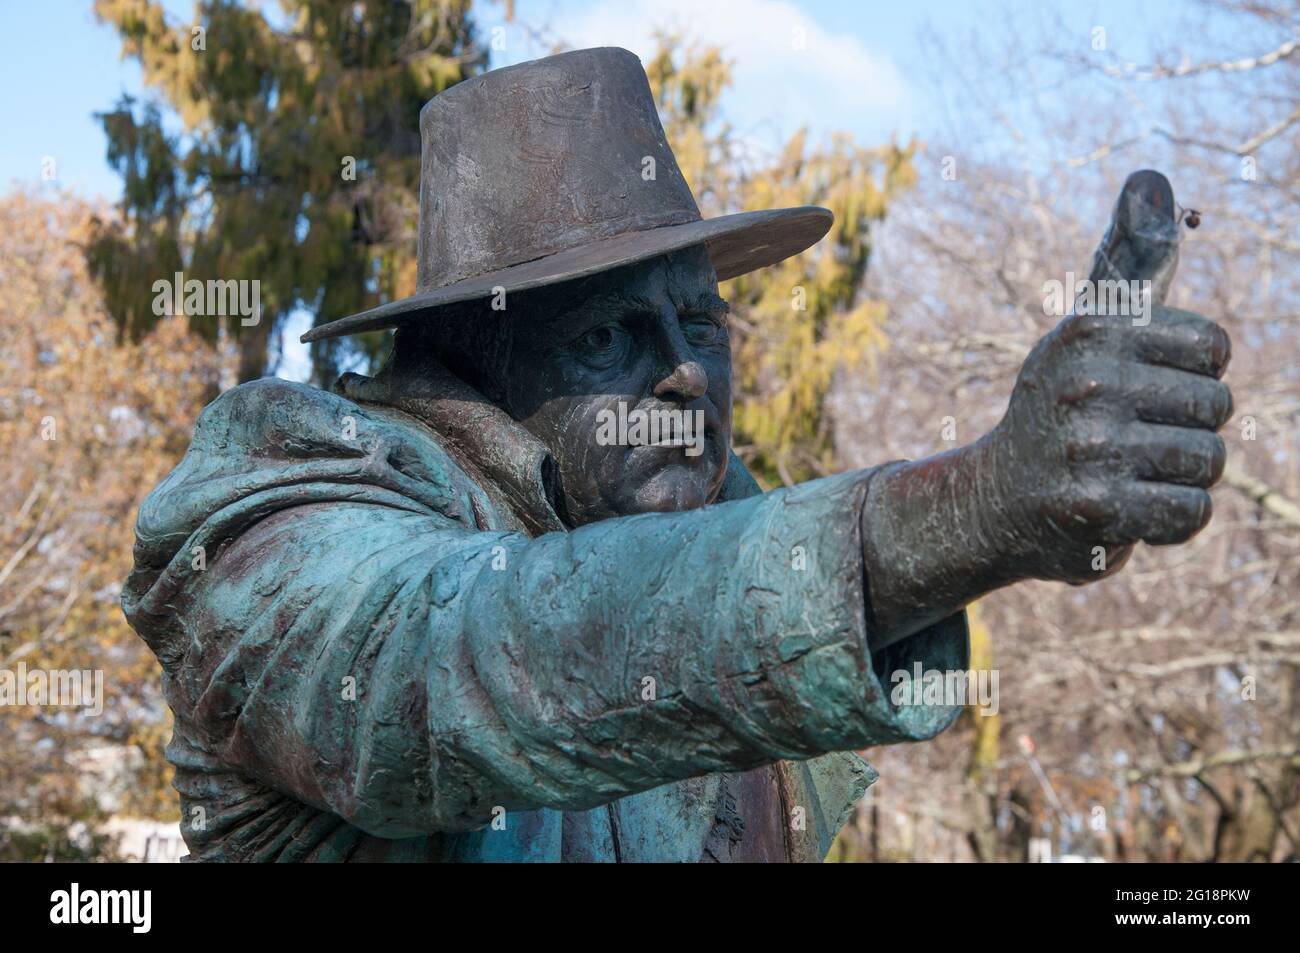 Statue de bronze de Peter Corlett de John Glover, ancien artiste colonial de Van Diemen's Land, dans le village historique d'Evandale, Tasmanie, Australie Banque D'Images